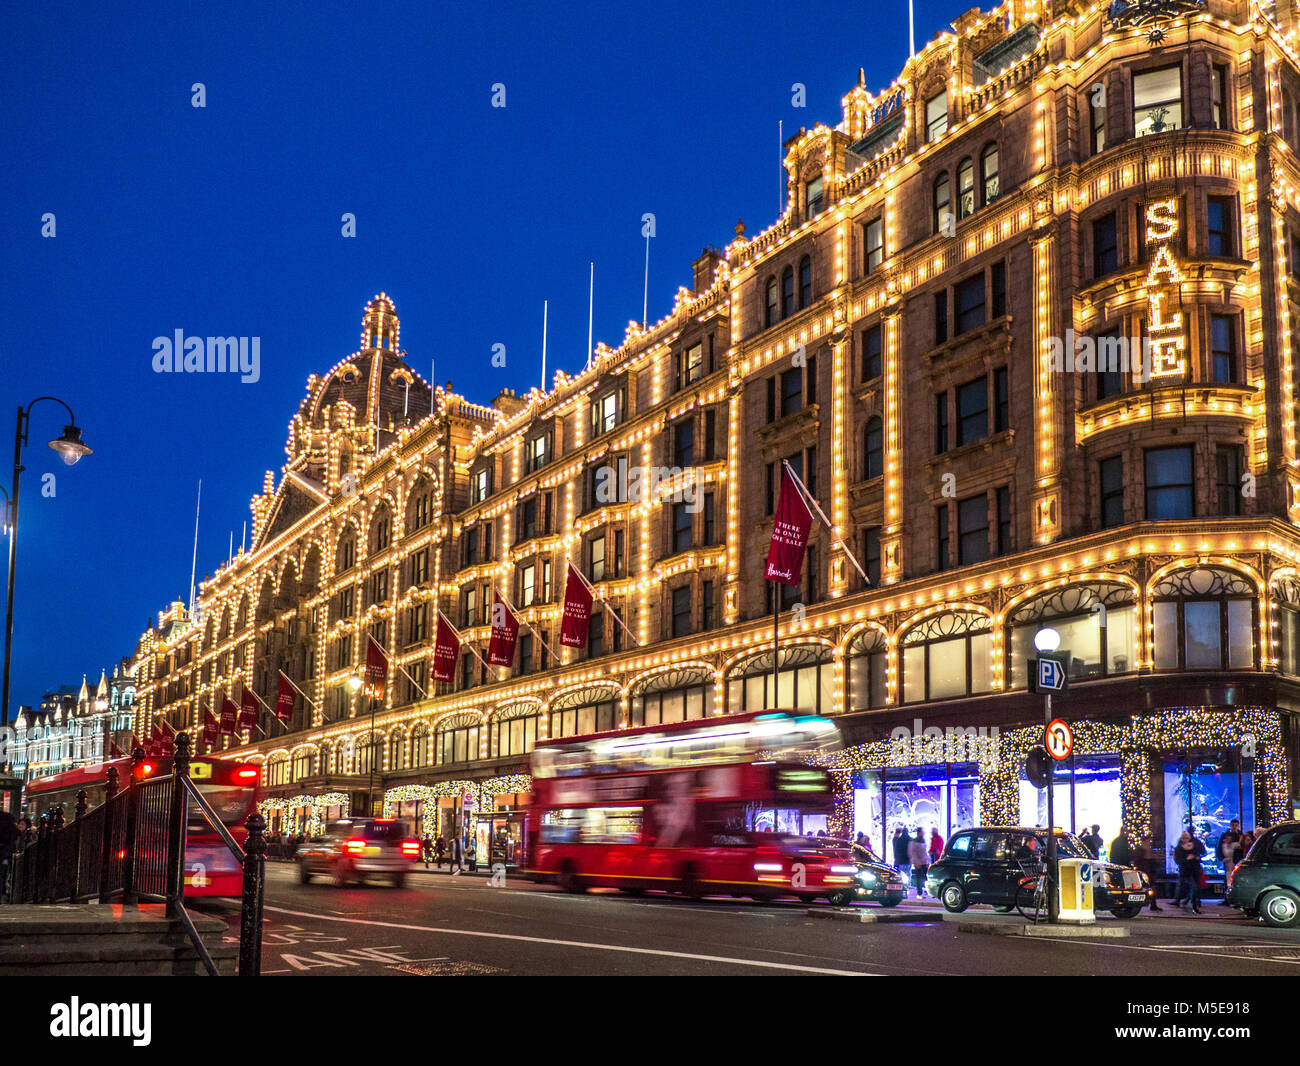 Harrods Sale Lights Dämmerung Kaufhaus beleuchtet in der Nacht mit 'Sale' Schild Käufer rote Busse und vorbei an Taxis auf der ULEZ Route Knightsbridge London SW1 Stockfoto